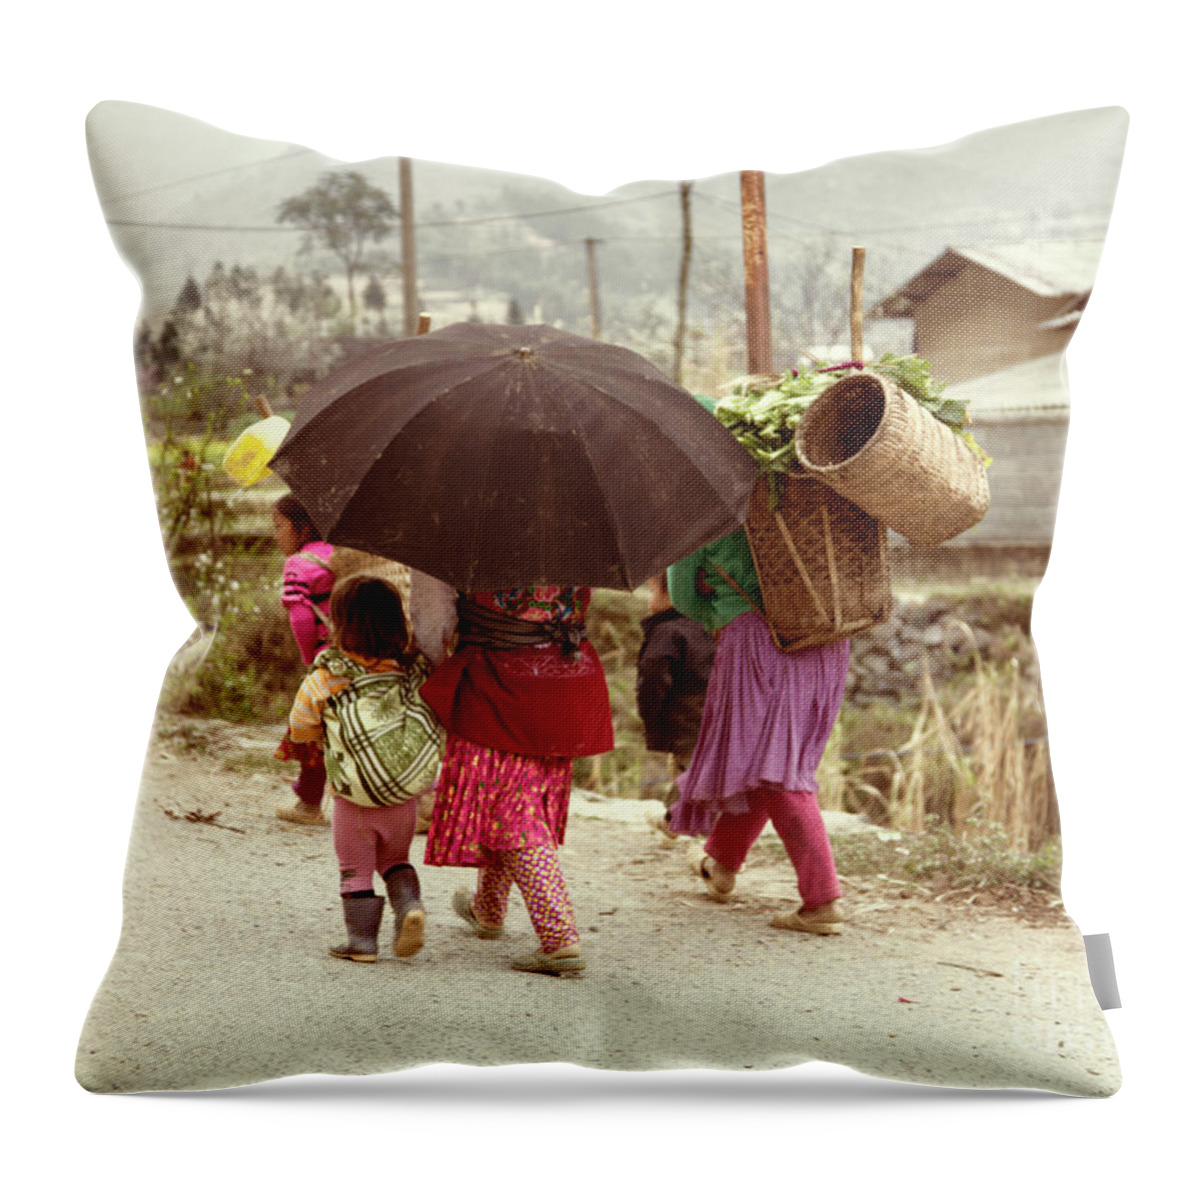 Vietnam Throw Pillow featuring the photograph Umbrella Children Vietnamese by Chuck Kuhn